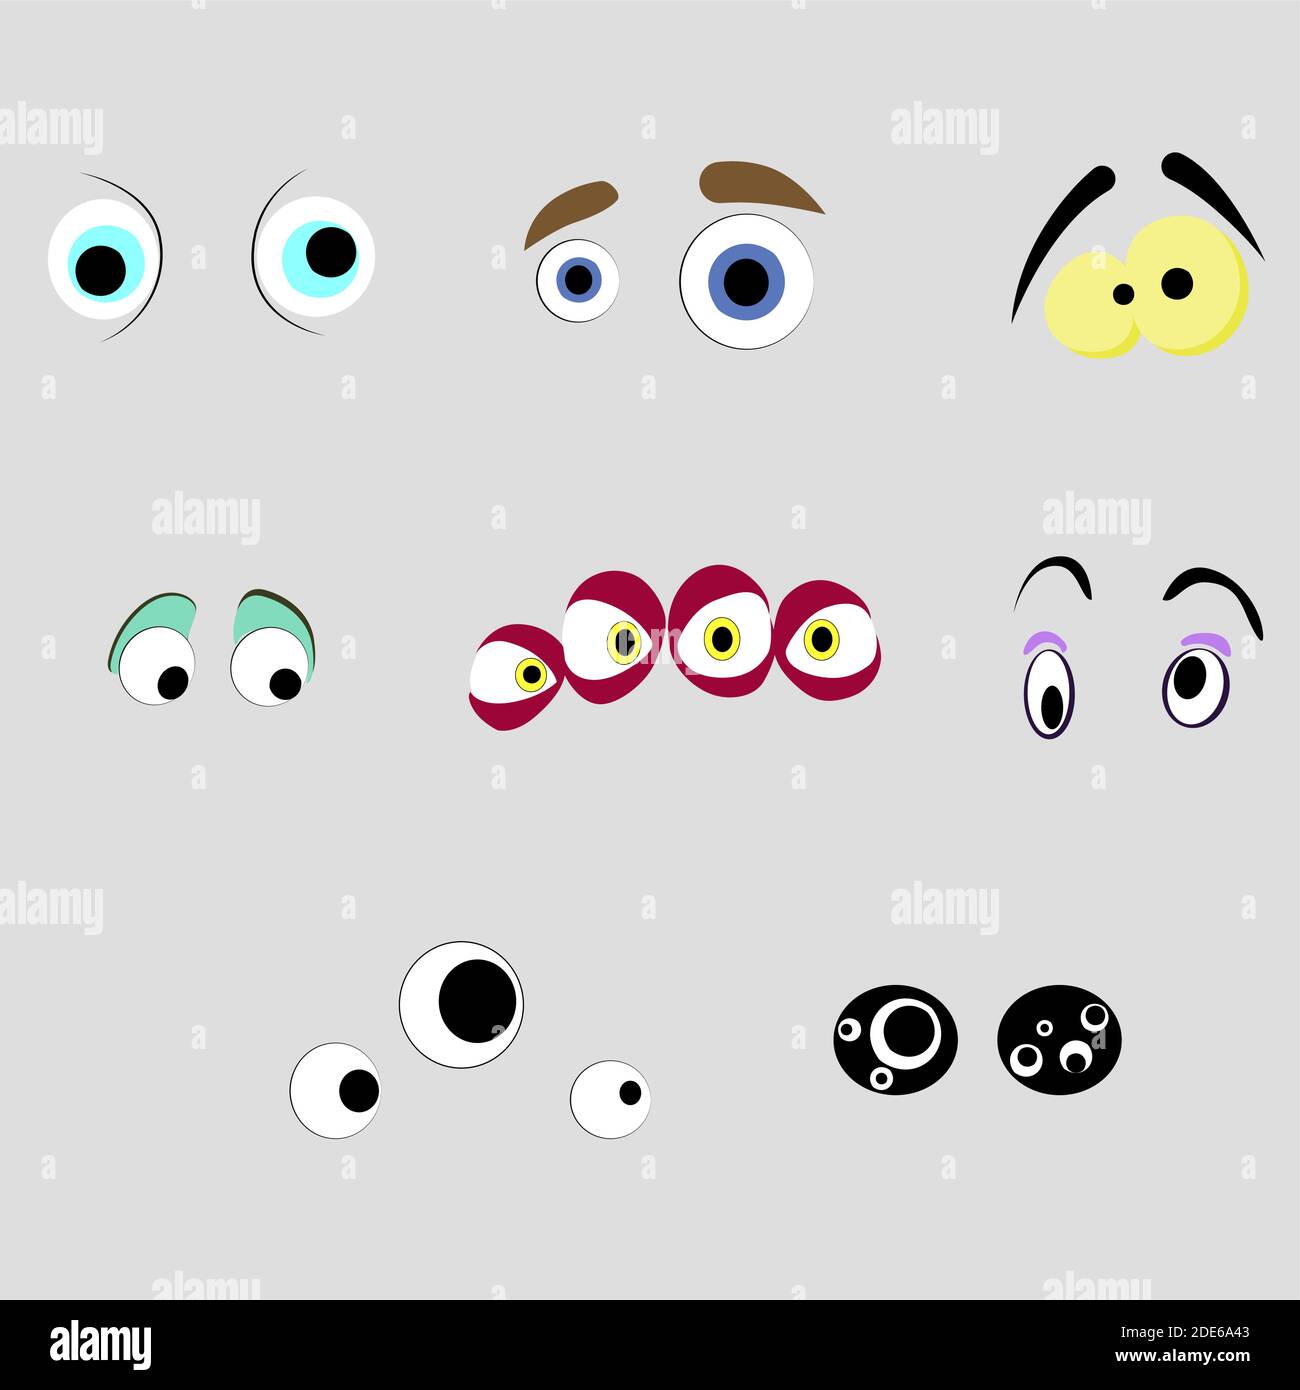 Aliens eyes eye Banque d'images vectorielles - Alamy